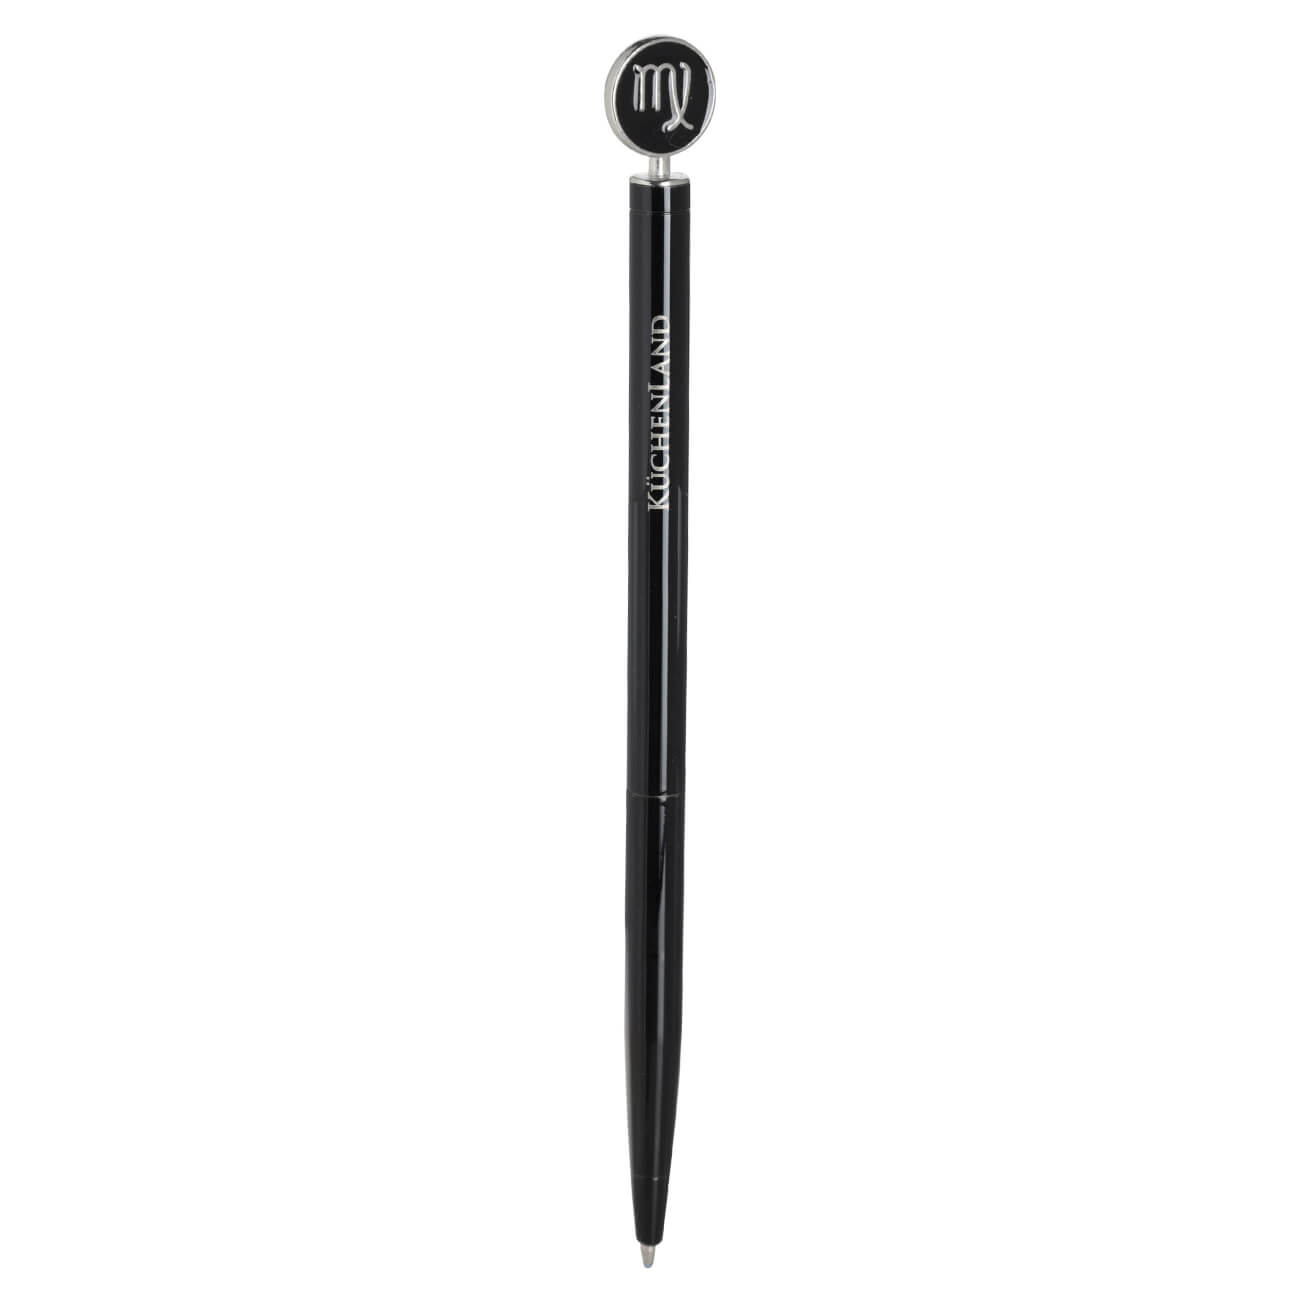 Ручка шариковая, 15 см, с фигуркой, сталь, черно-серебристая, Дева, Zodiac грабли длина 25 см деревянная ручка